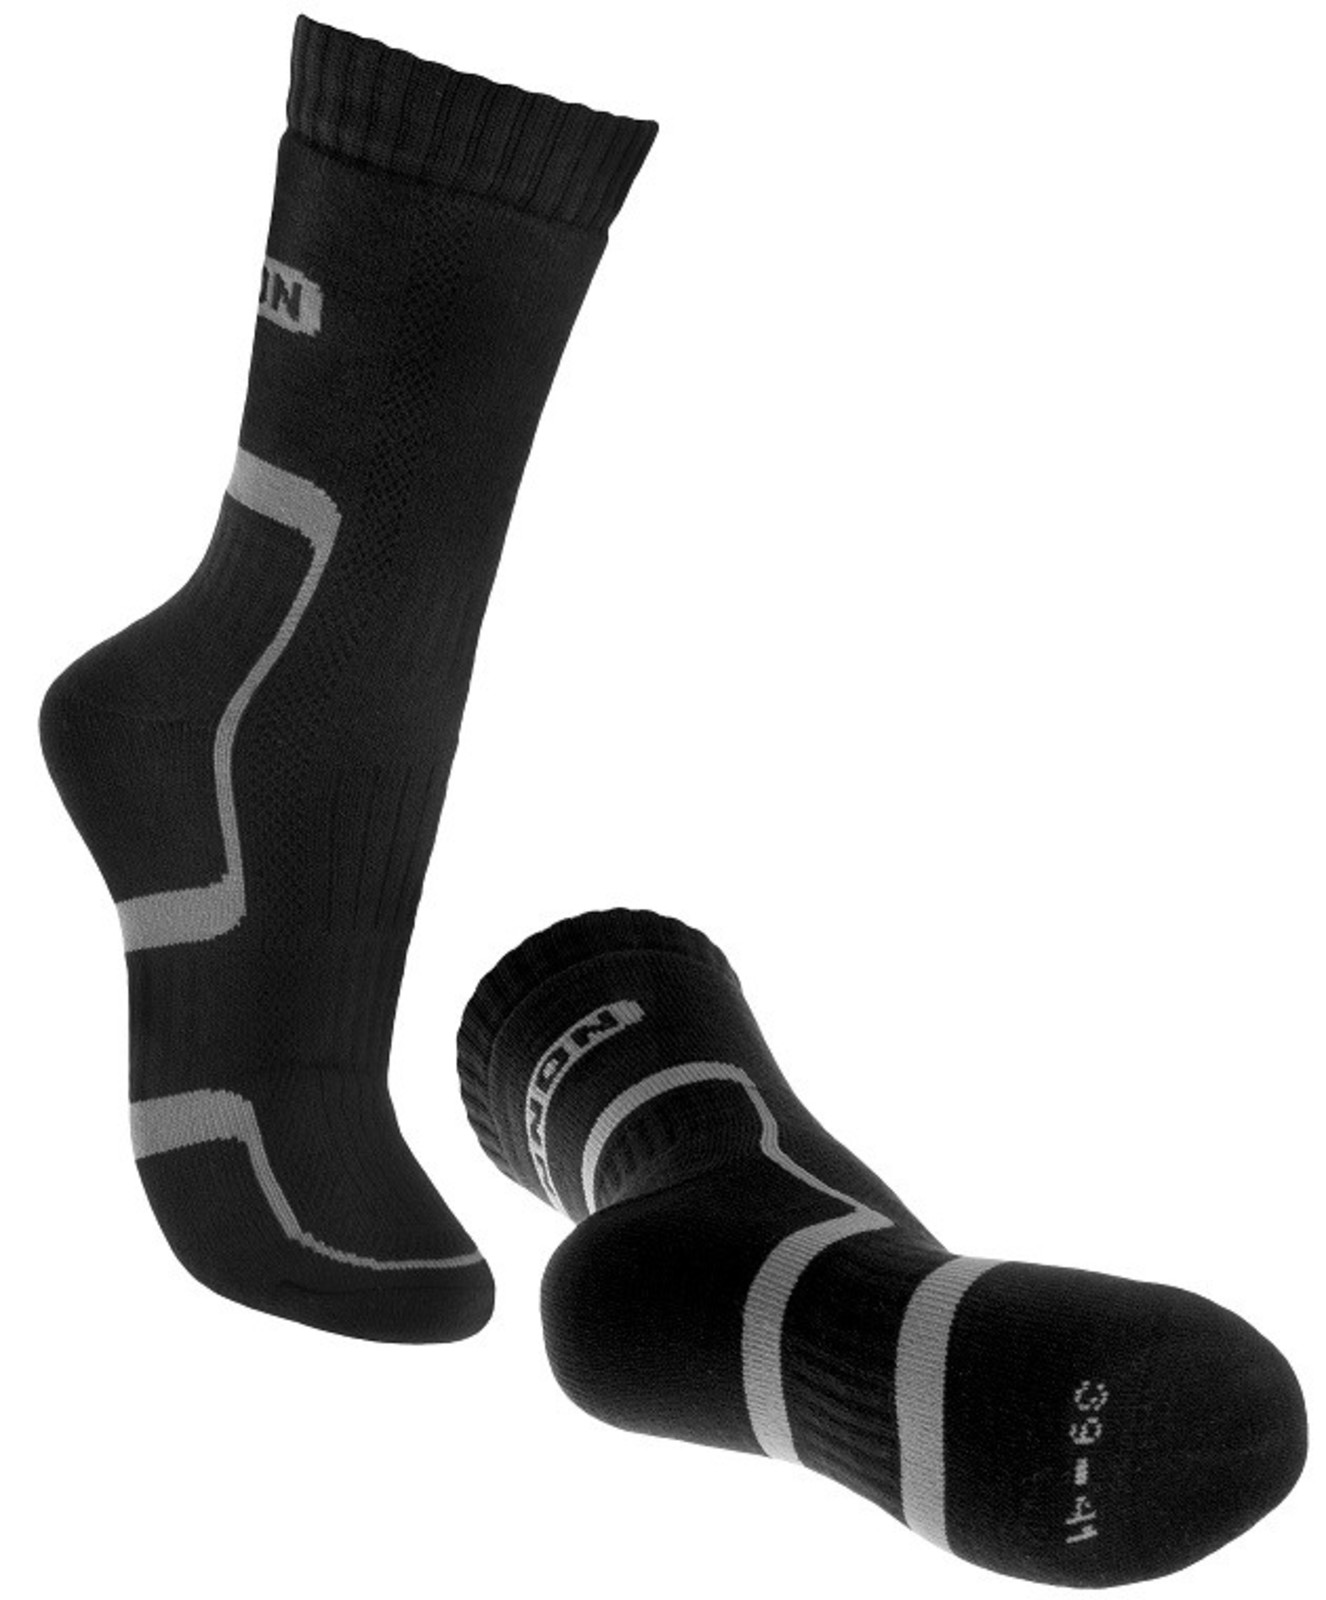 Ponožky Bennon Trek  - veľkosť: 42-44, farba: sivá/čierna